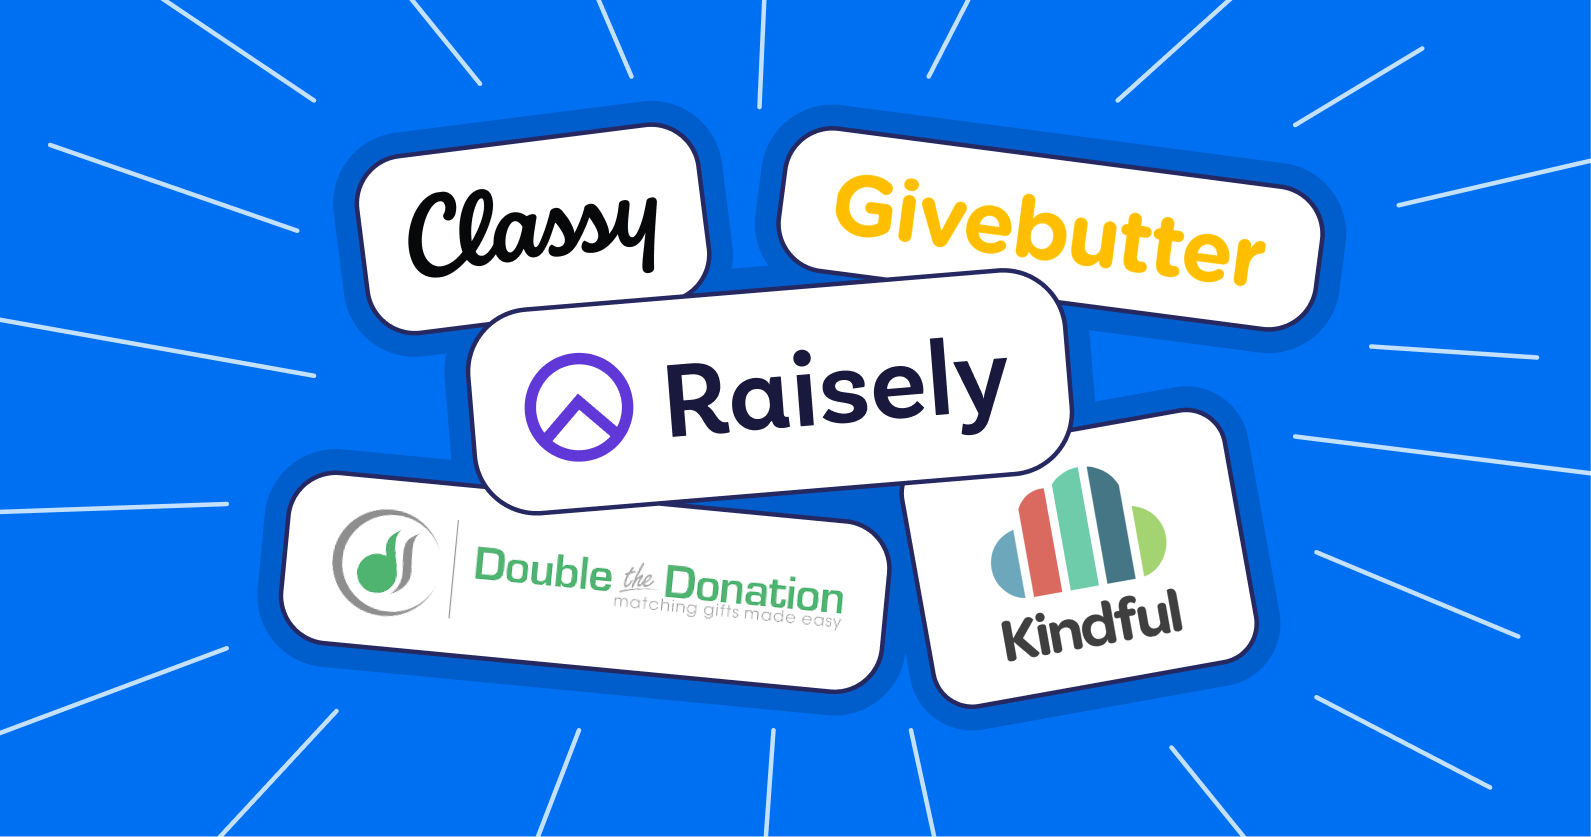 Illustration of different fundraising platform logos.